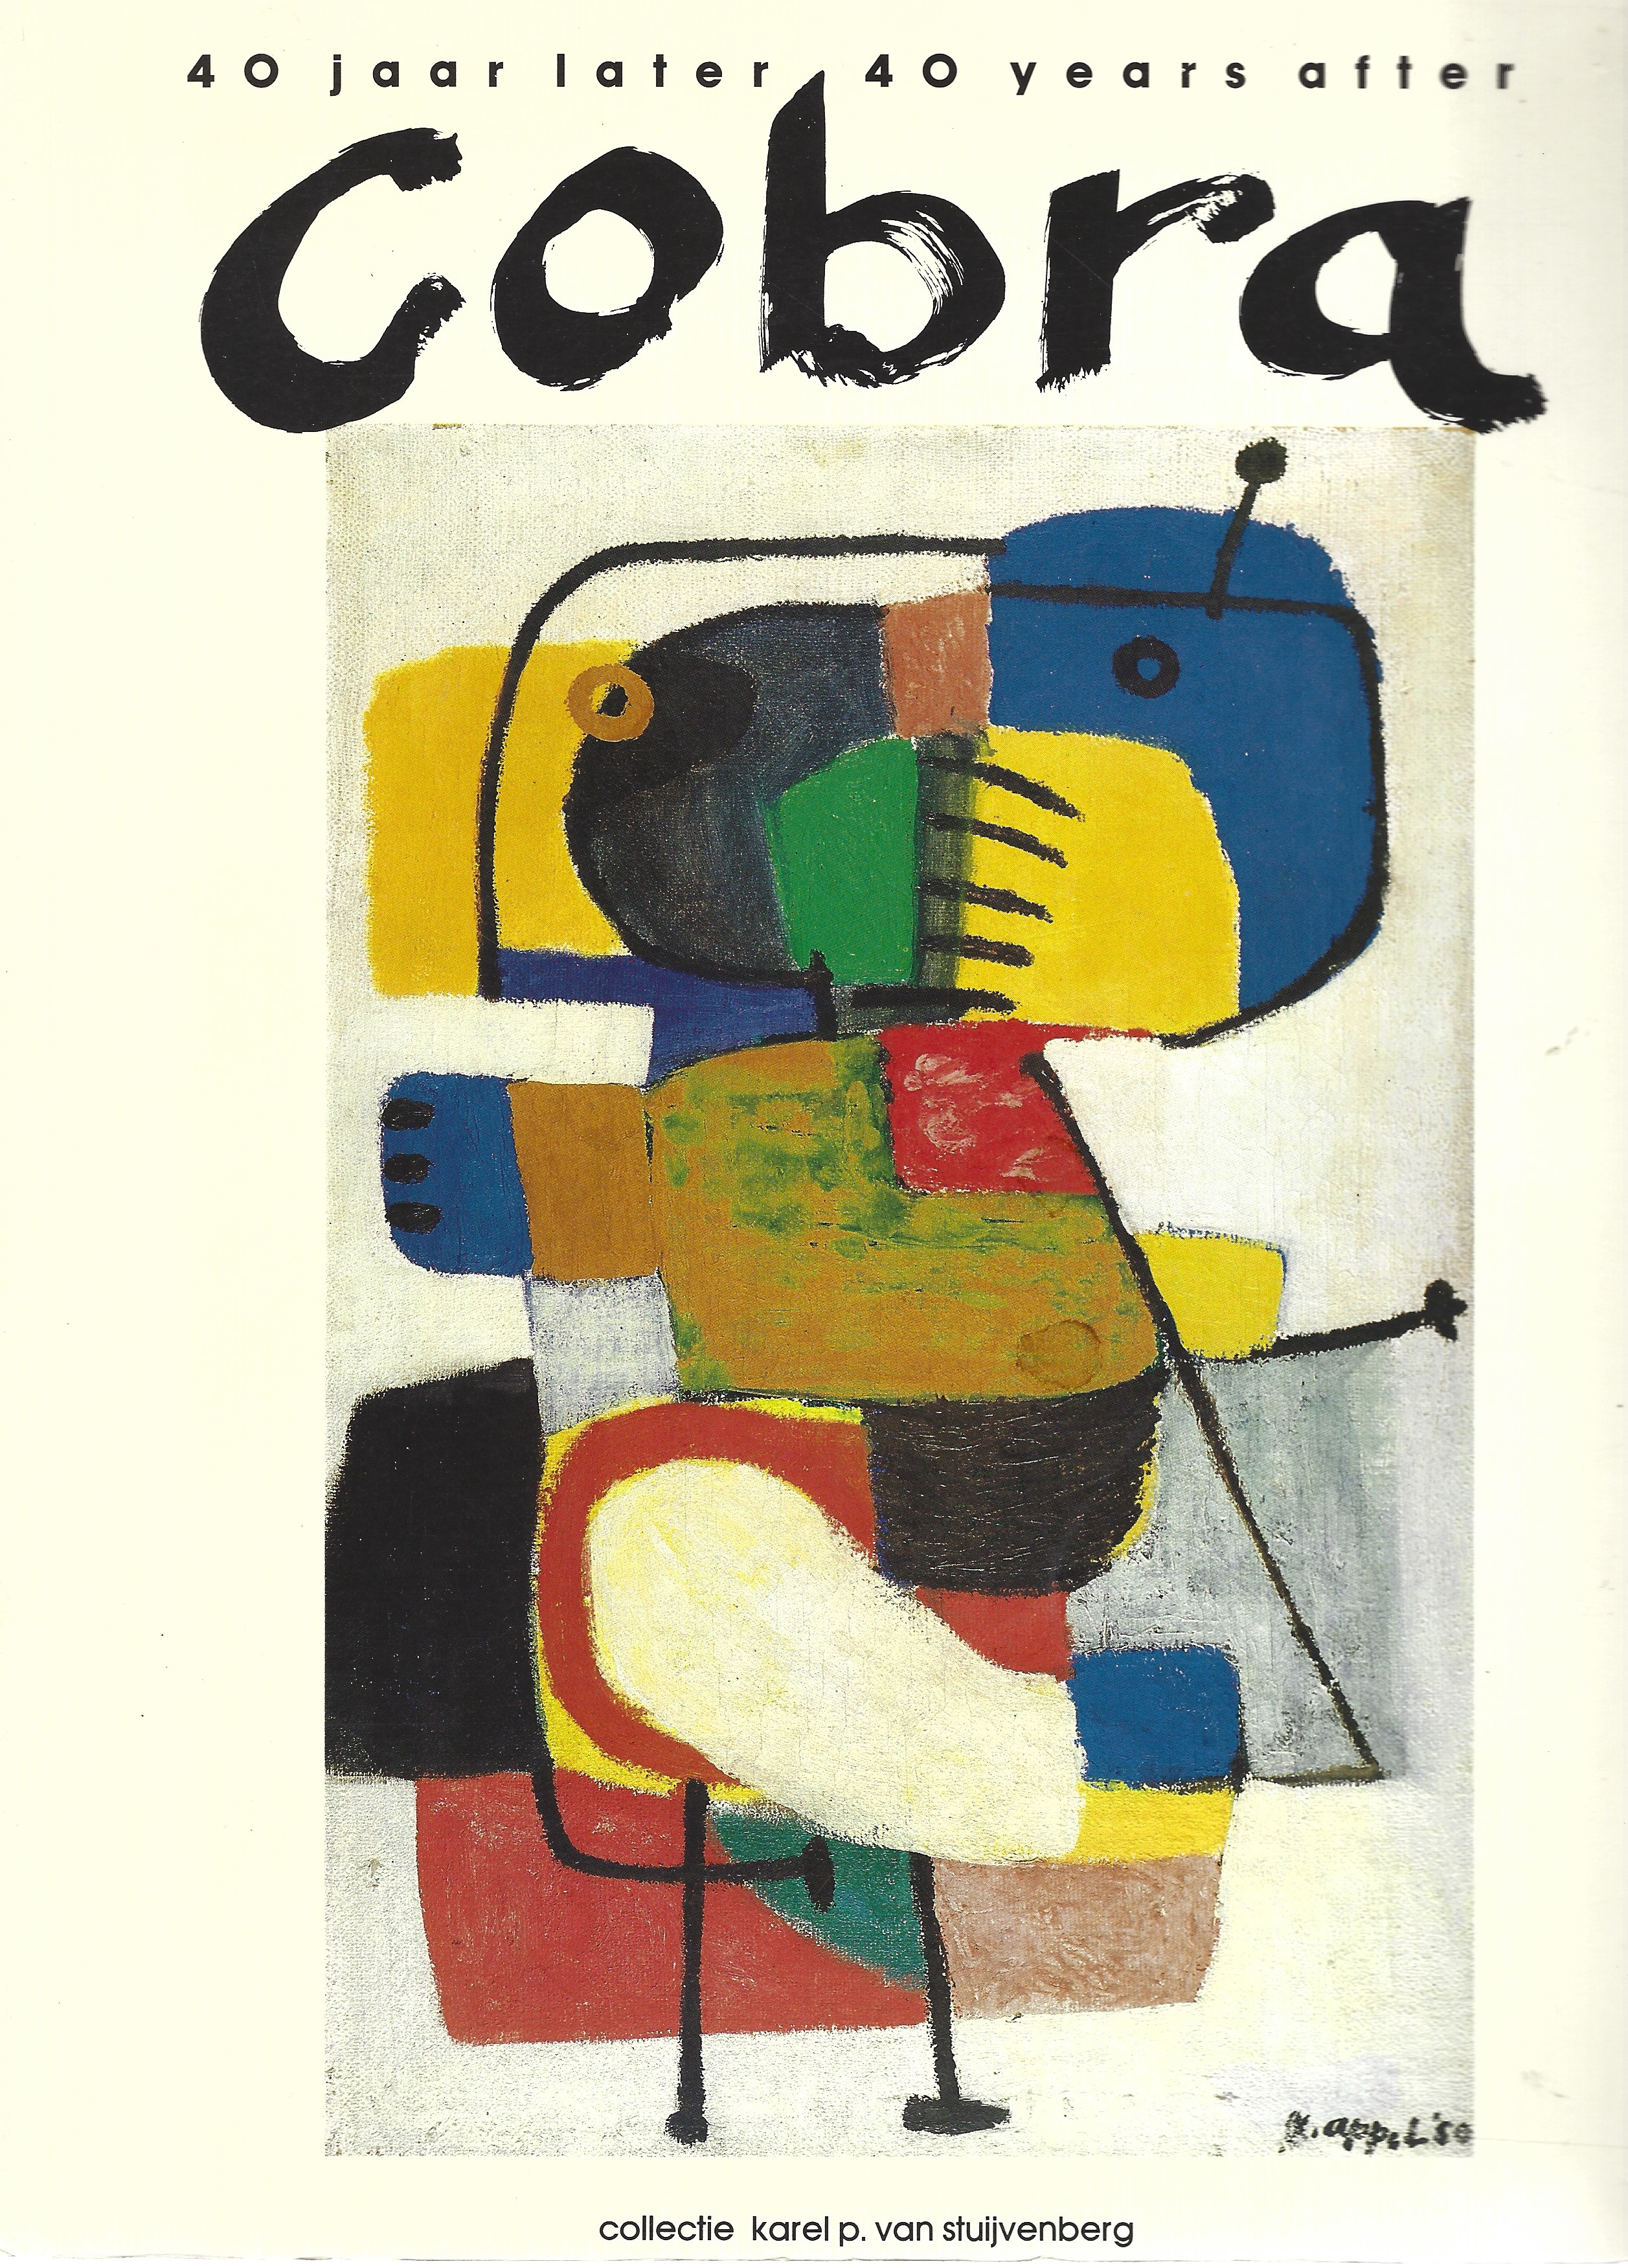 Cobra 40 jaar later | De collectie van J. Karel P. van Stuijvenberg, 1989